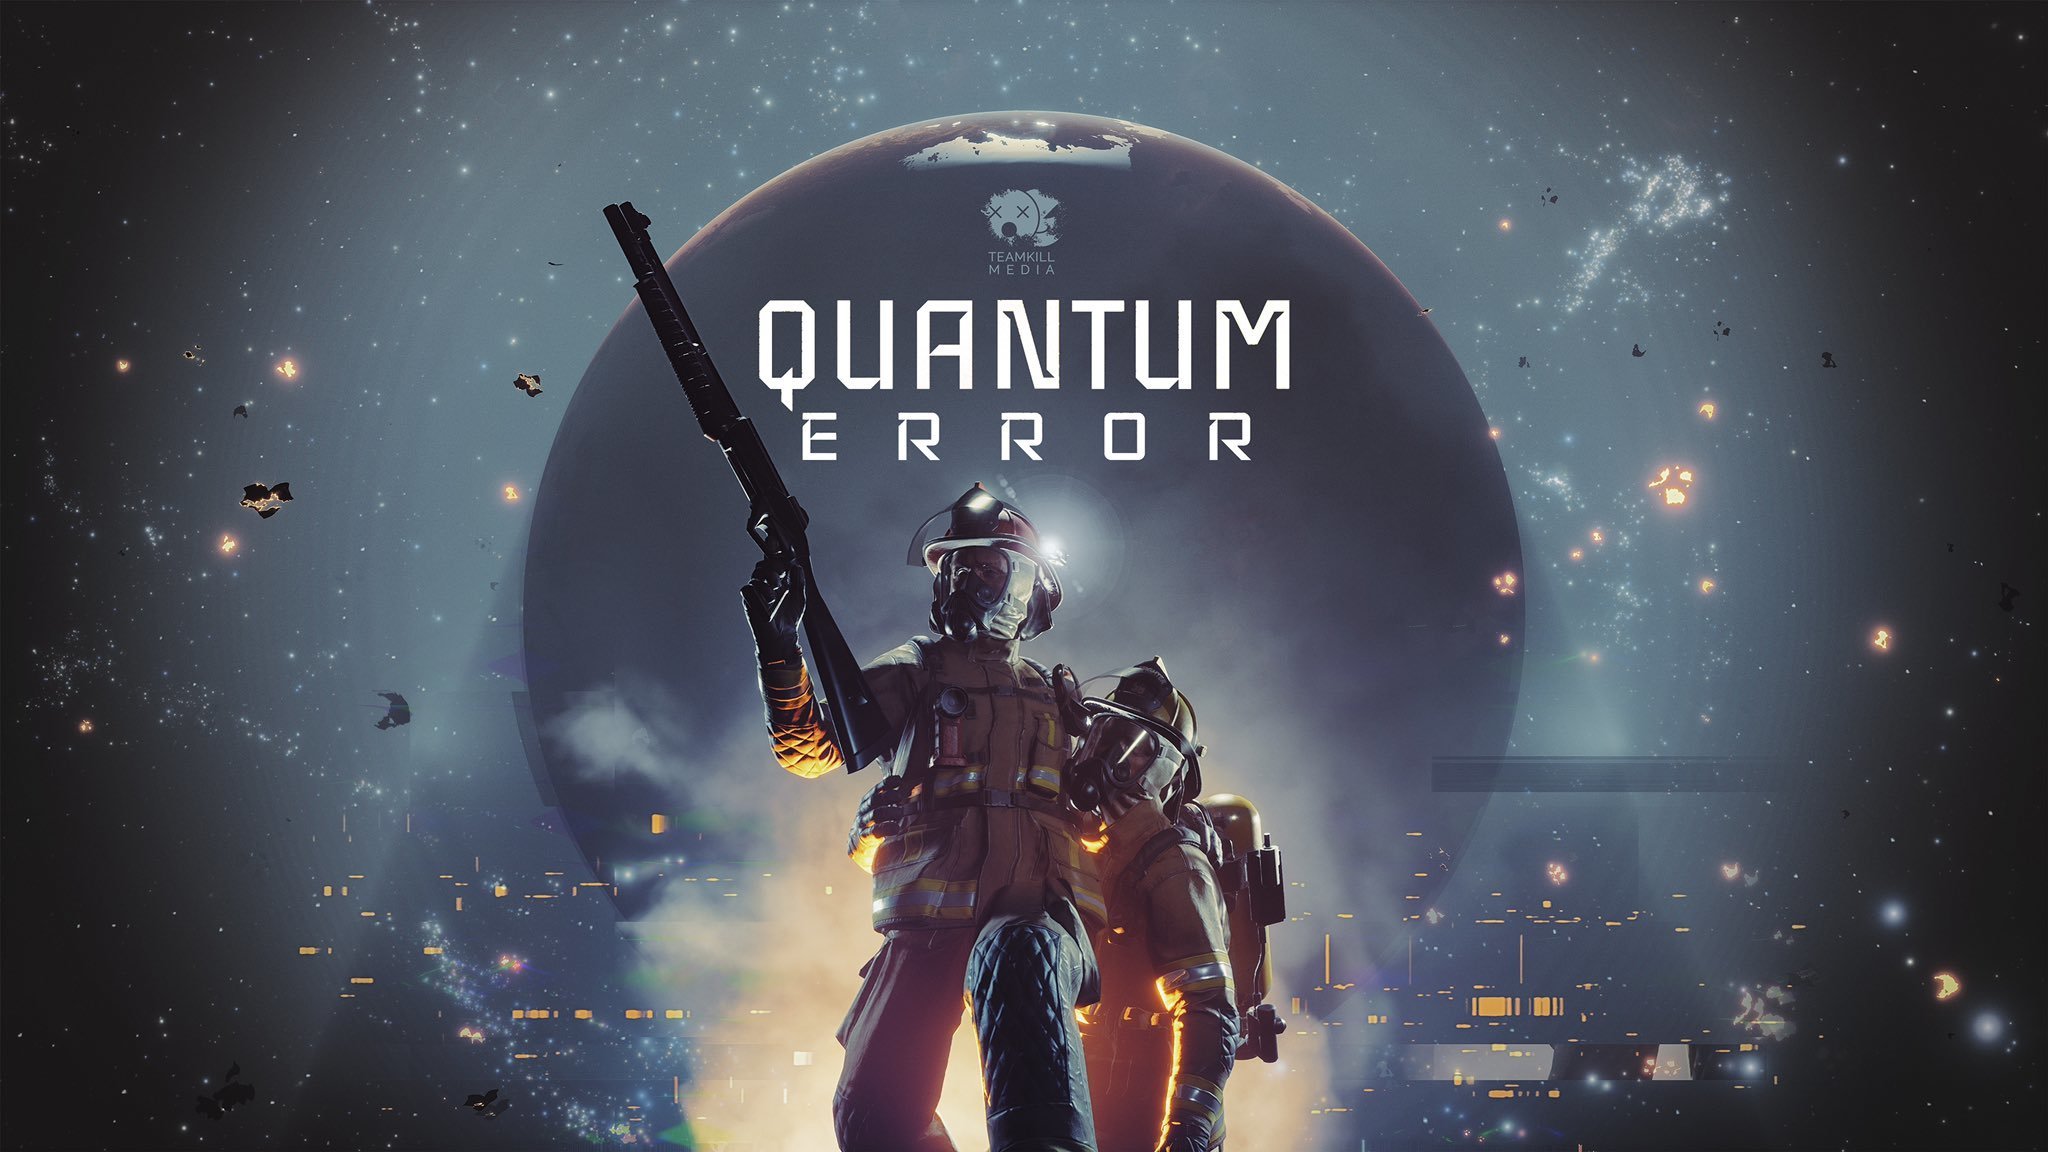 【PC游戏】开发商计划推出《量子误差》三部曲 以及更多其他游戏-第1张